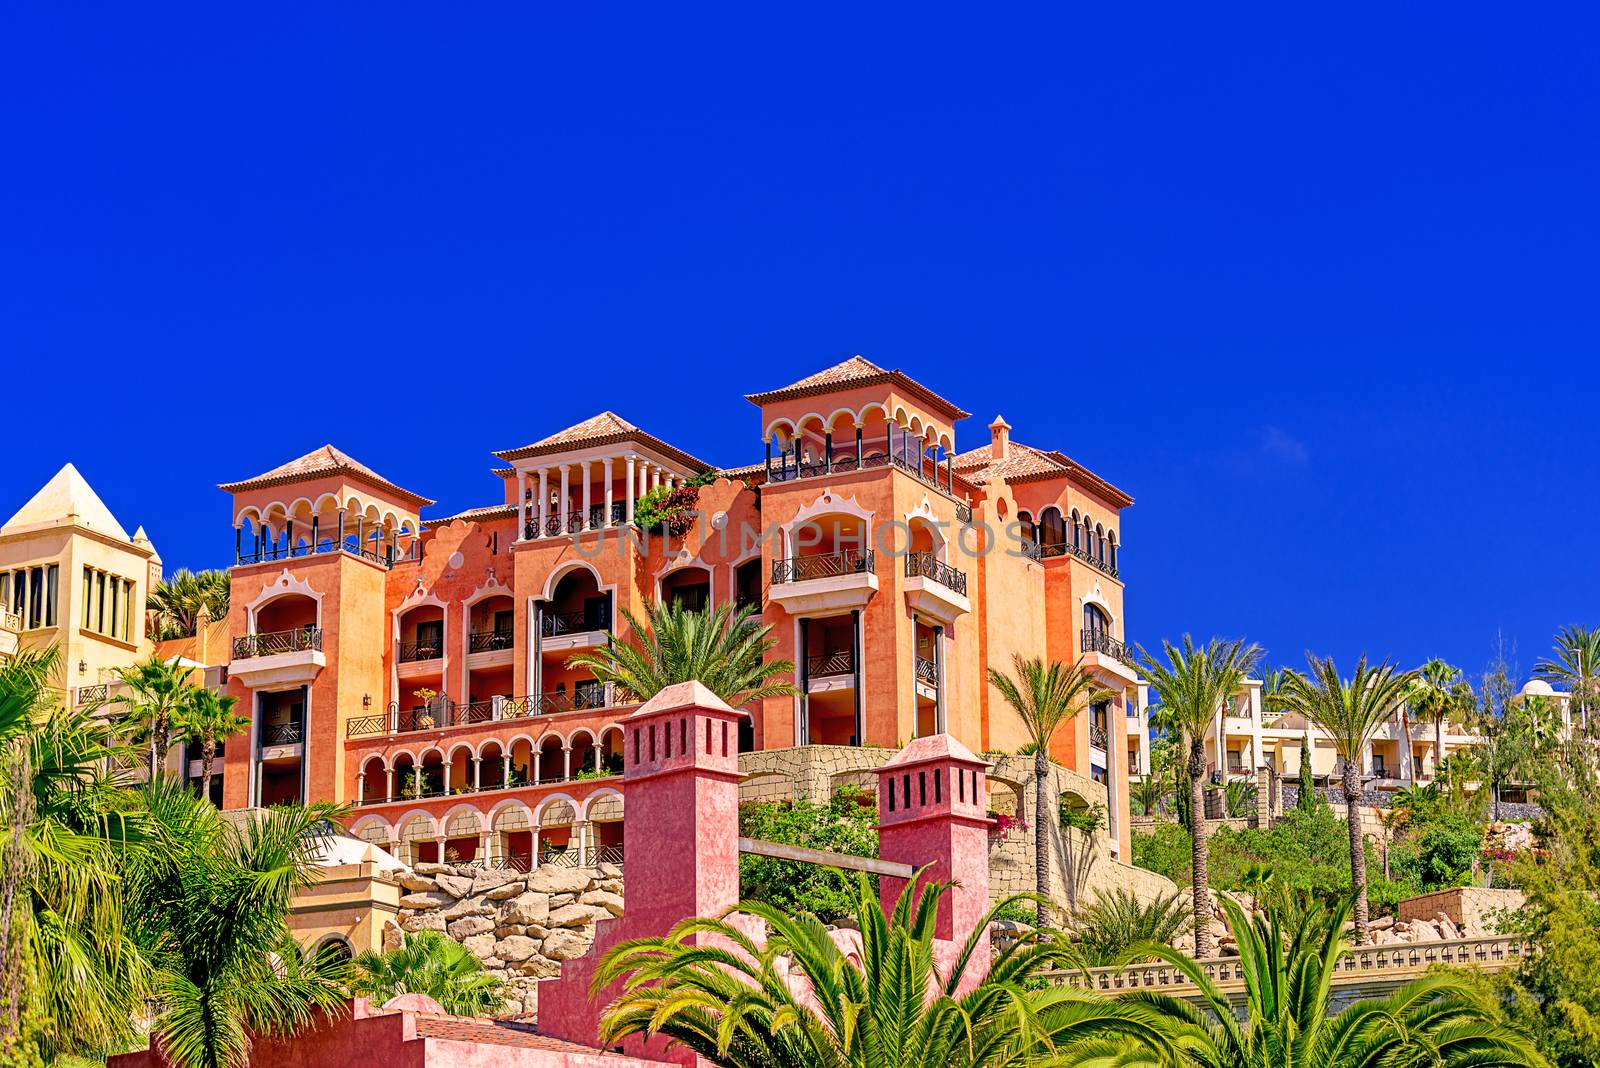 Resort at Tenerife Island by Nanisimova